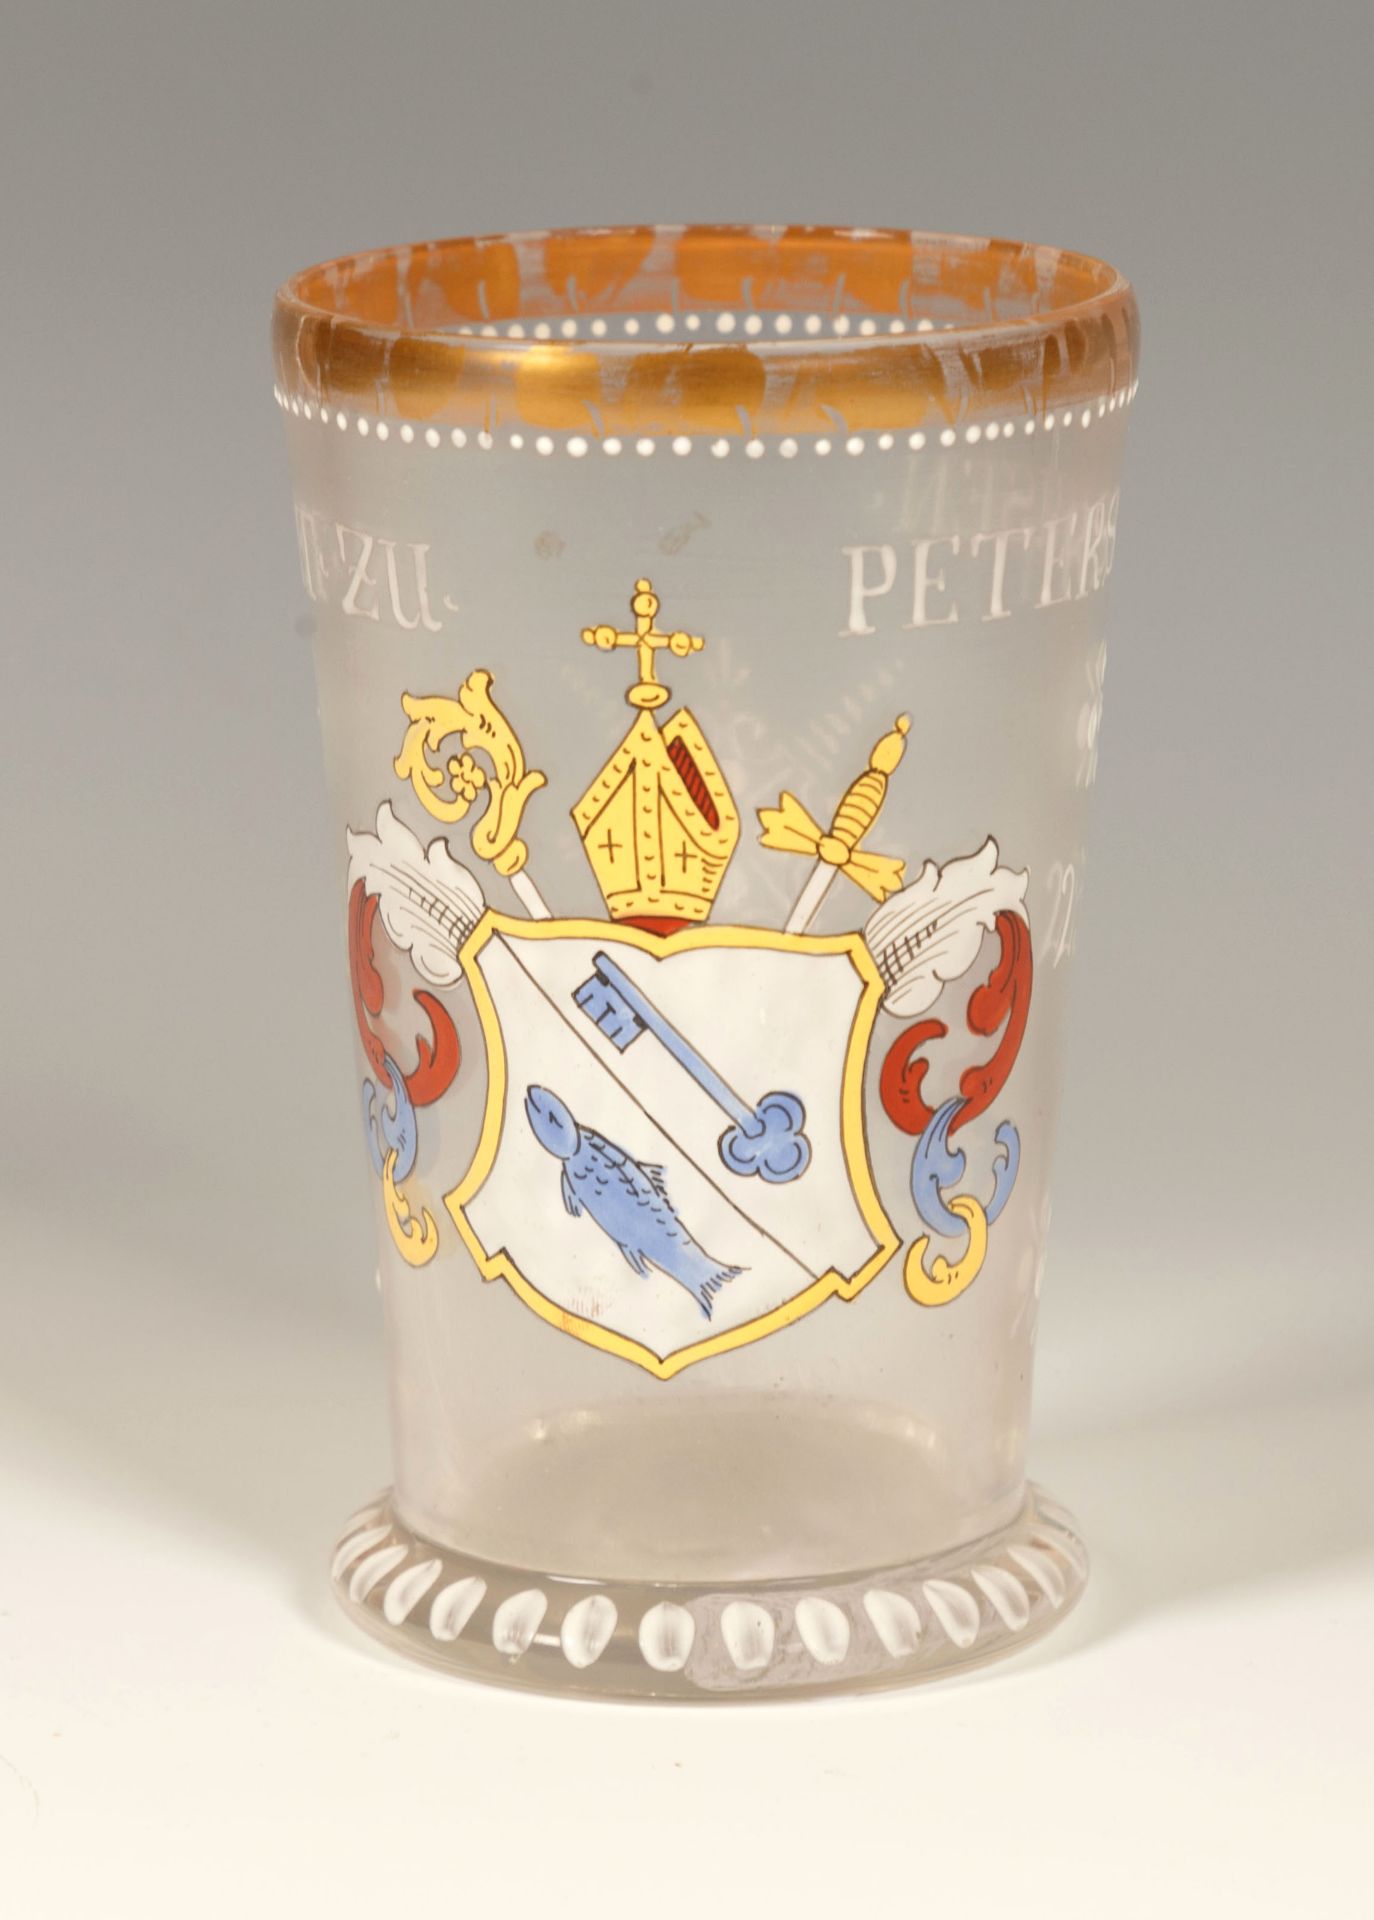 Abtbecher. Farbloses Glas mit bunter Emailbemalung. 'Abt zu Petershausen' Wappen und Datierung 1623